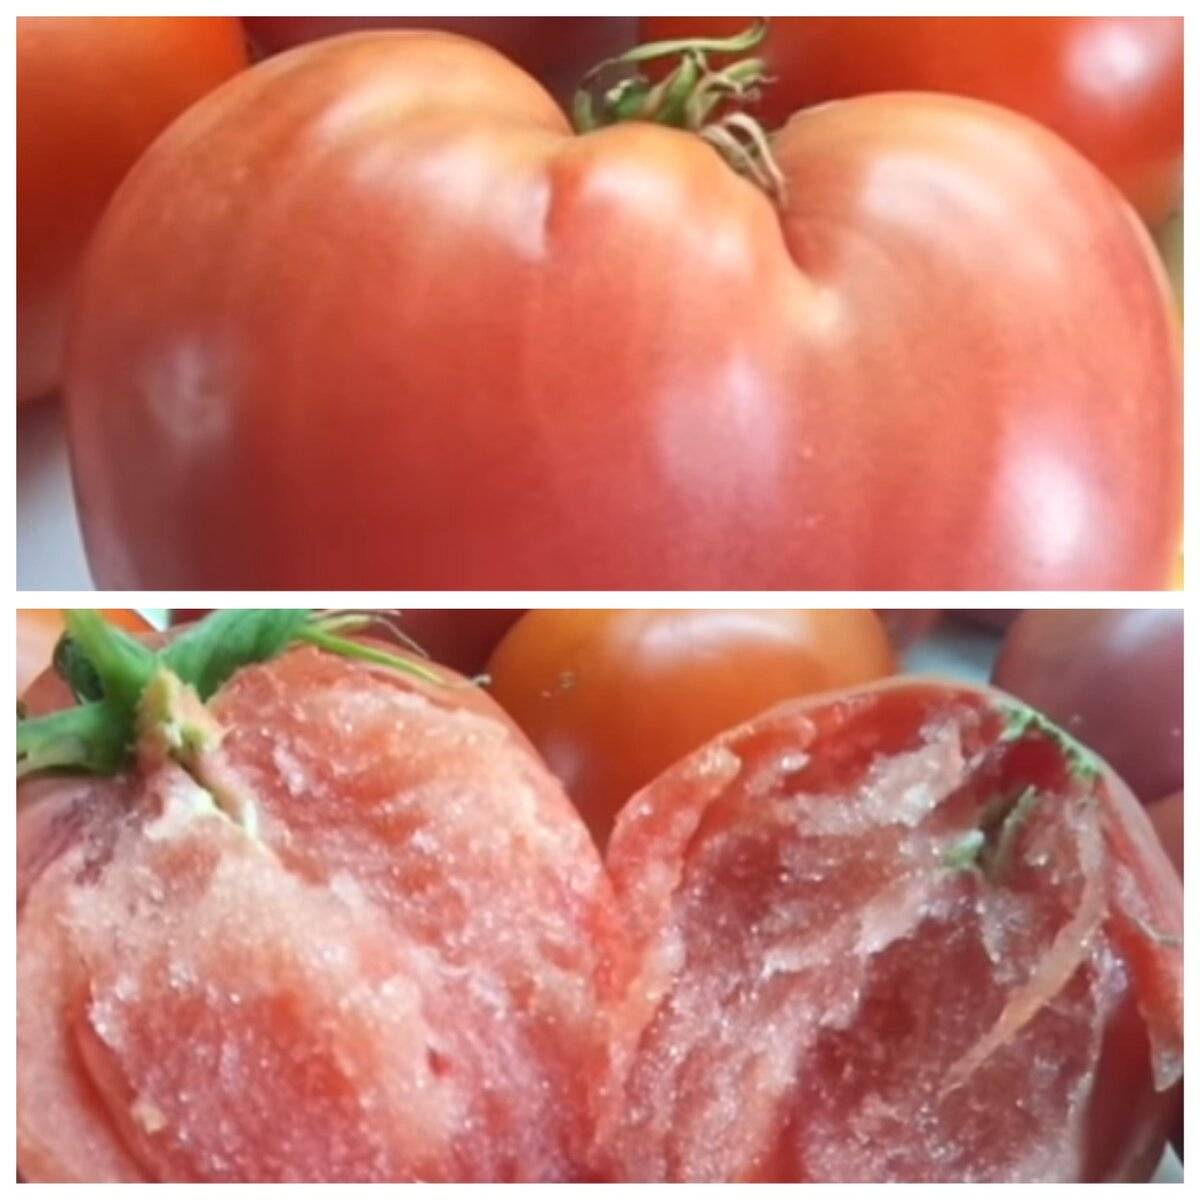 Описание самых урожайных семян томатов сибирской селекции: анастасия, ураган, семейный и другие